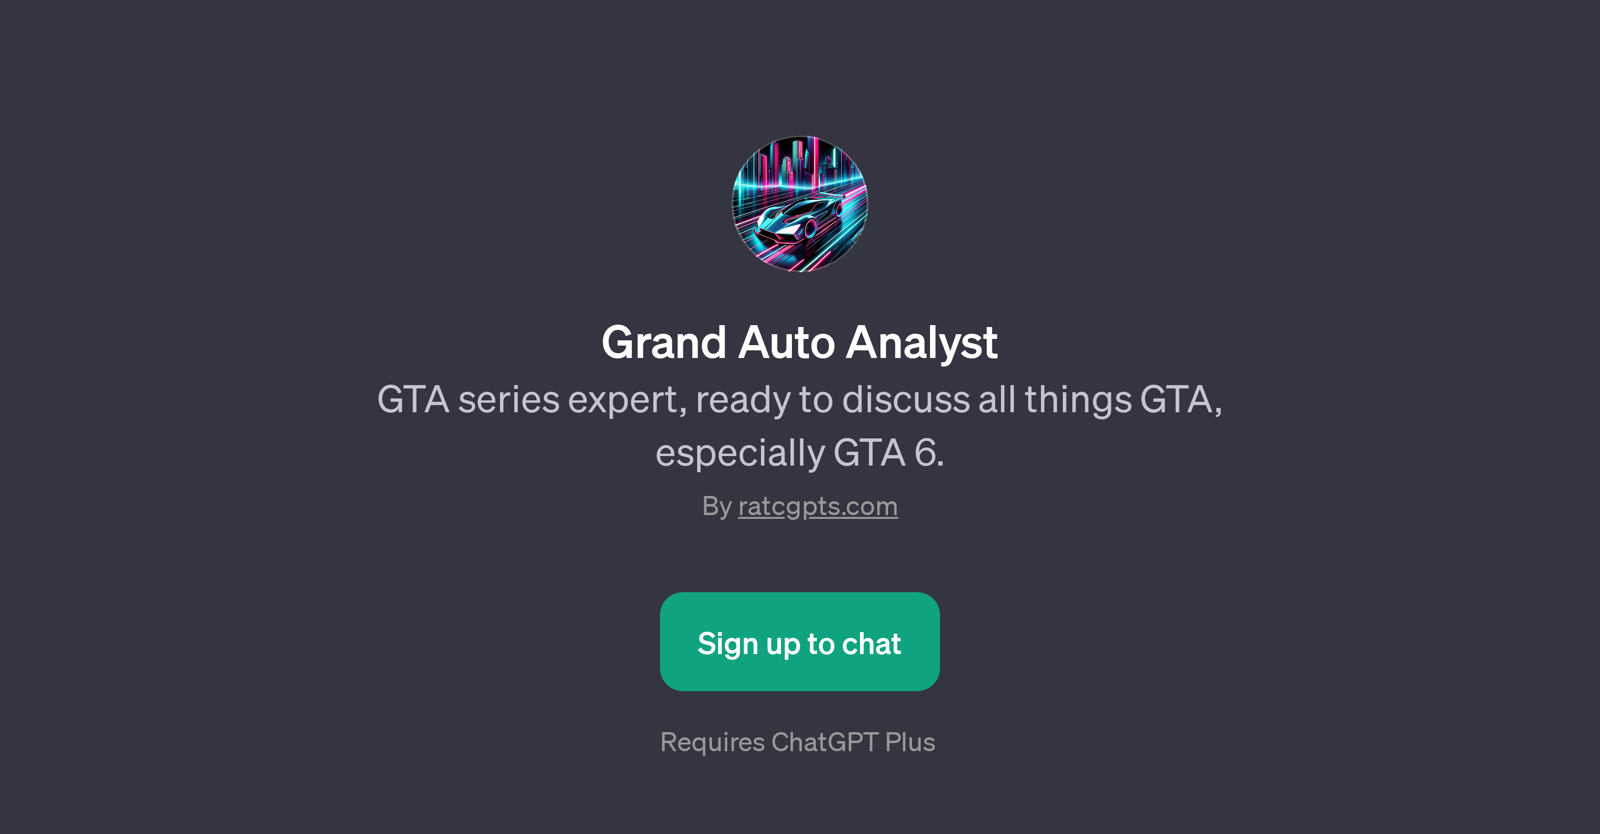 Grand Auto Analyst website